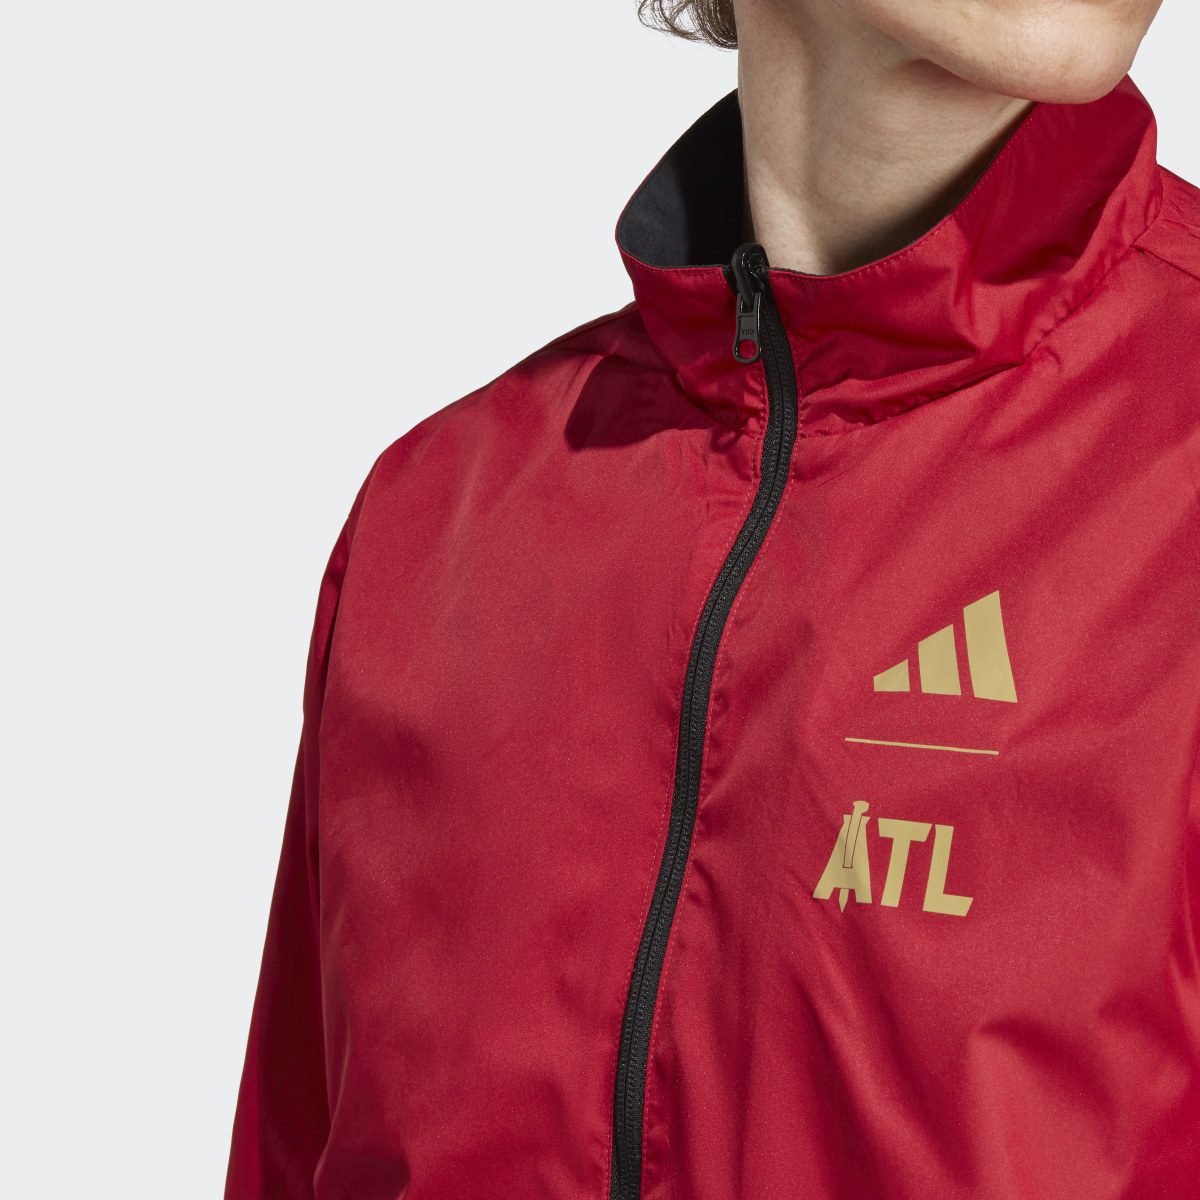 Adidas Atlanta United FC Anthem Jacket. 8